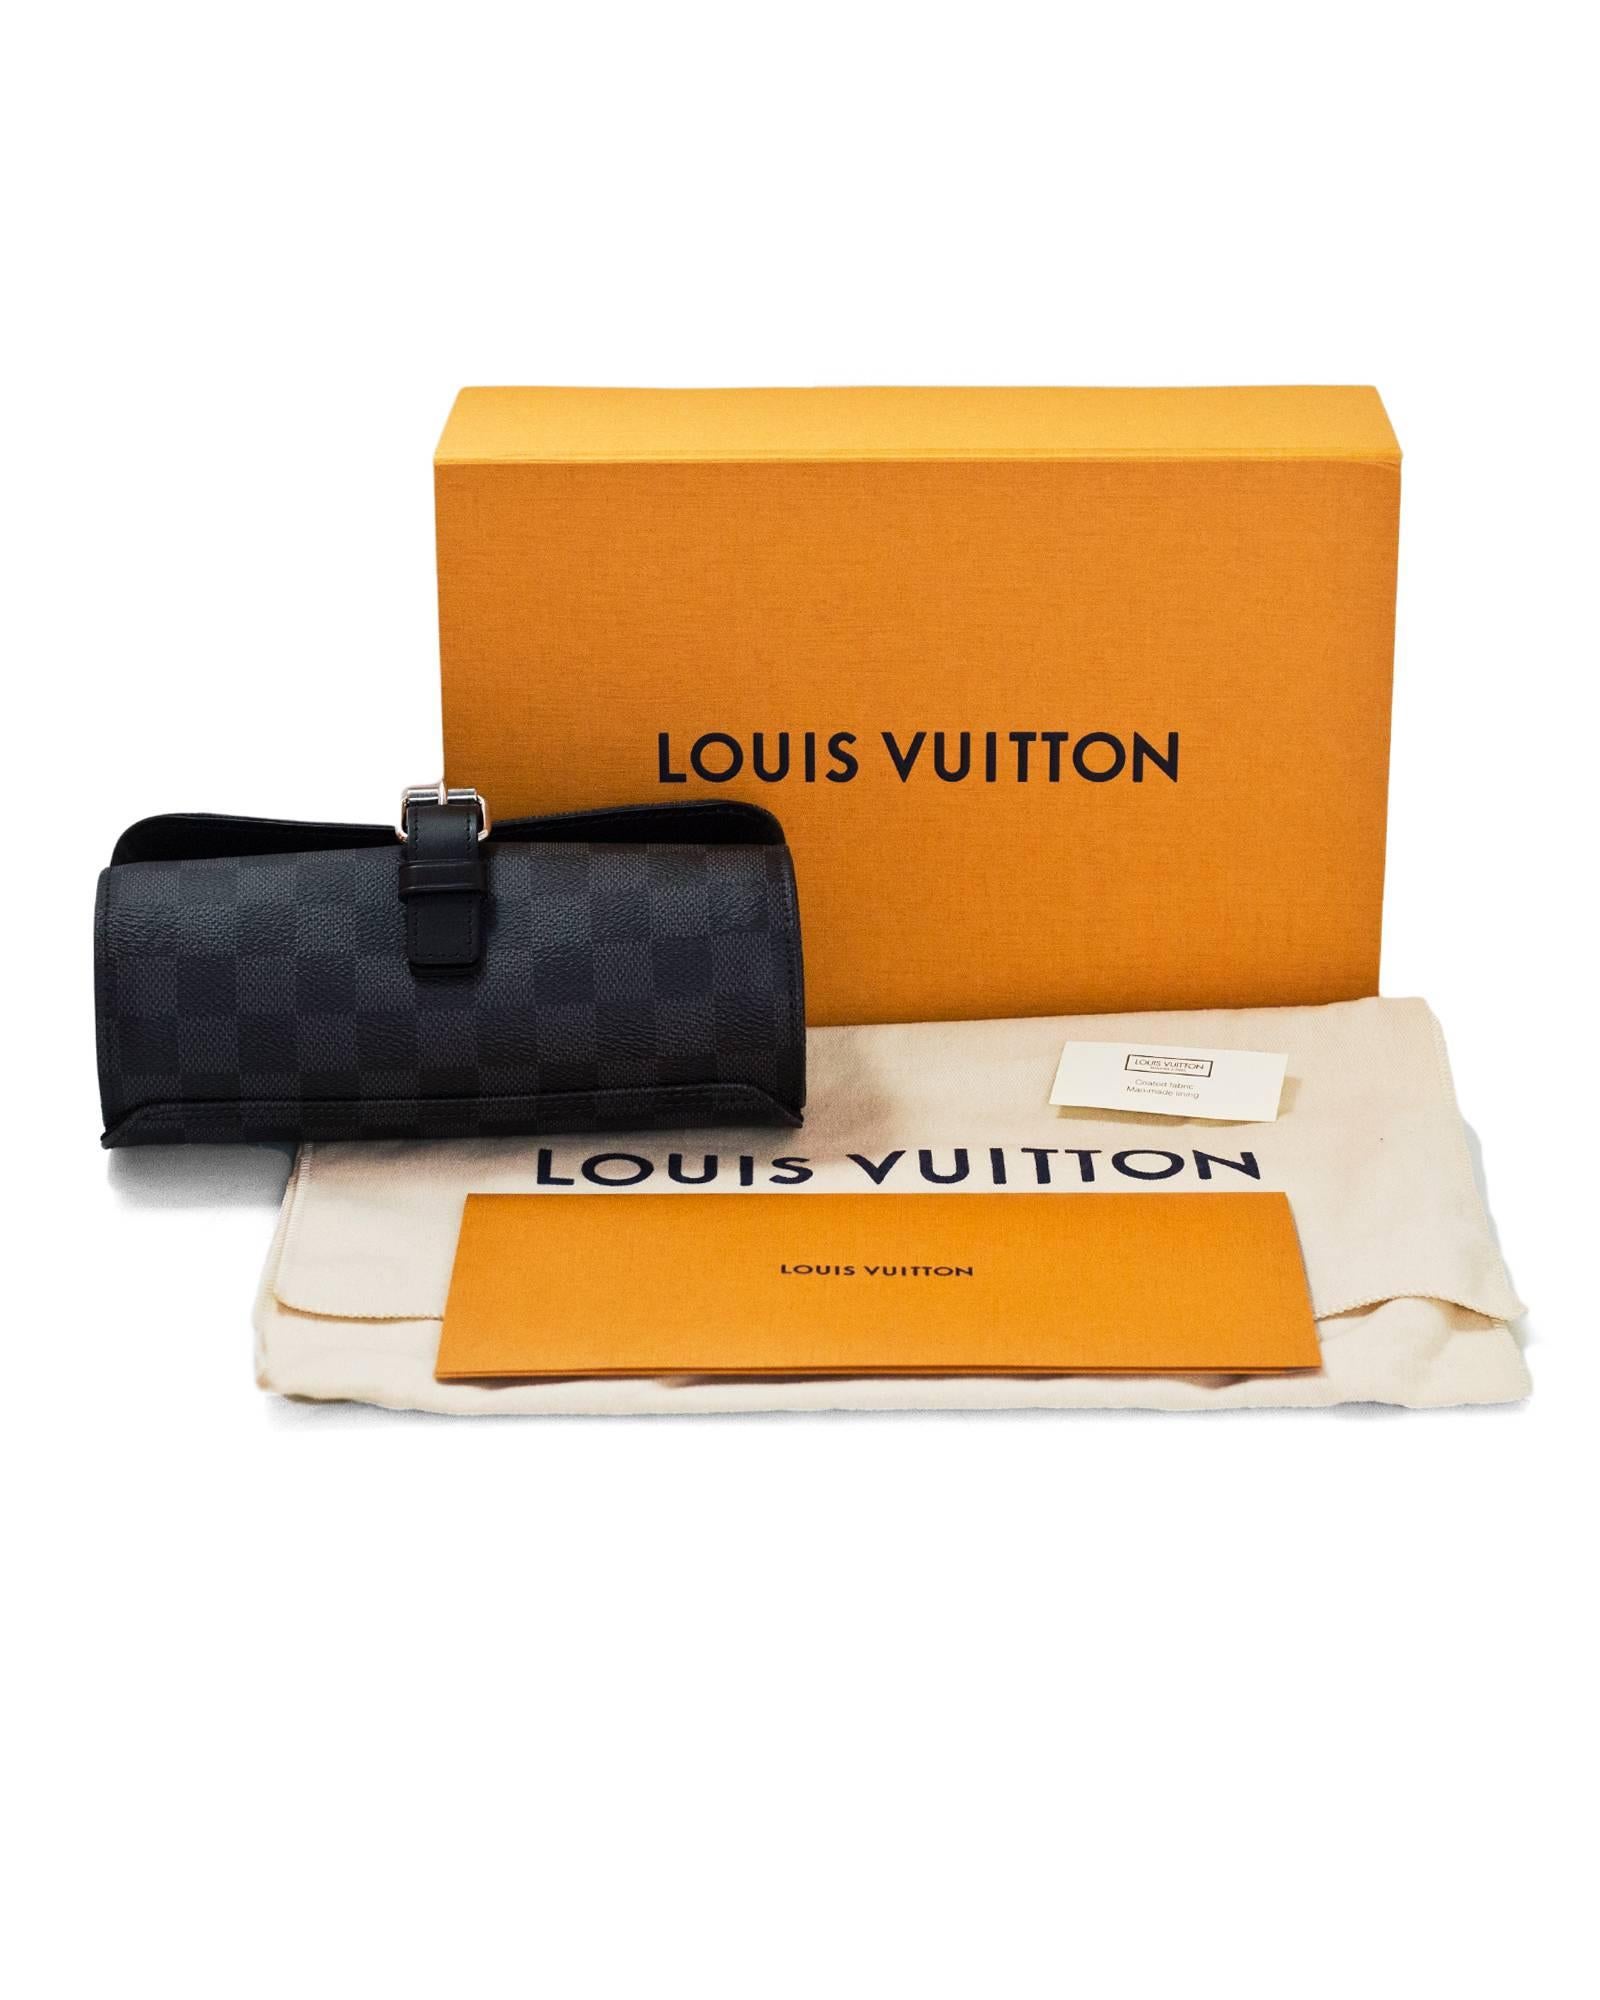 Louis Vuitton Graphite Damier 3 Watch Case with Box & Receipt 2